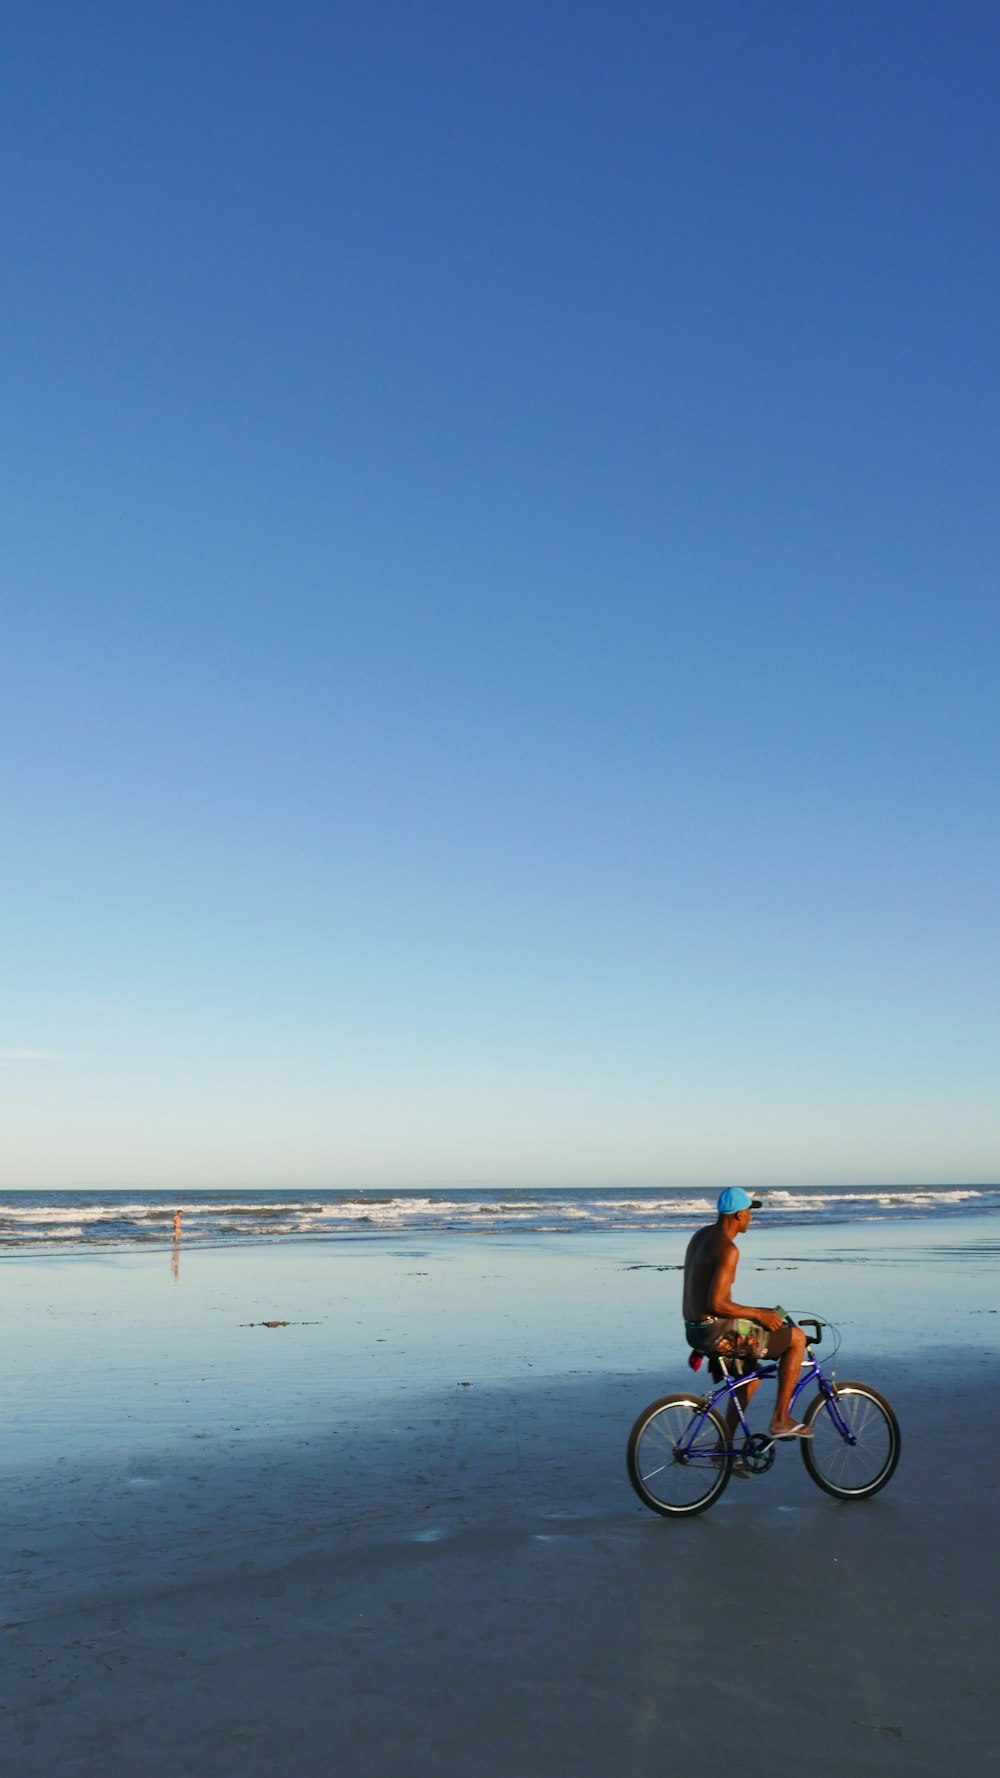 a man riding a bike on a beach next to the ocean